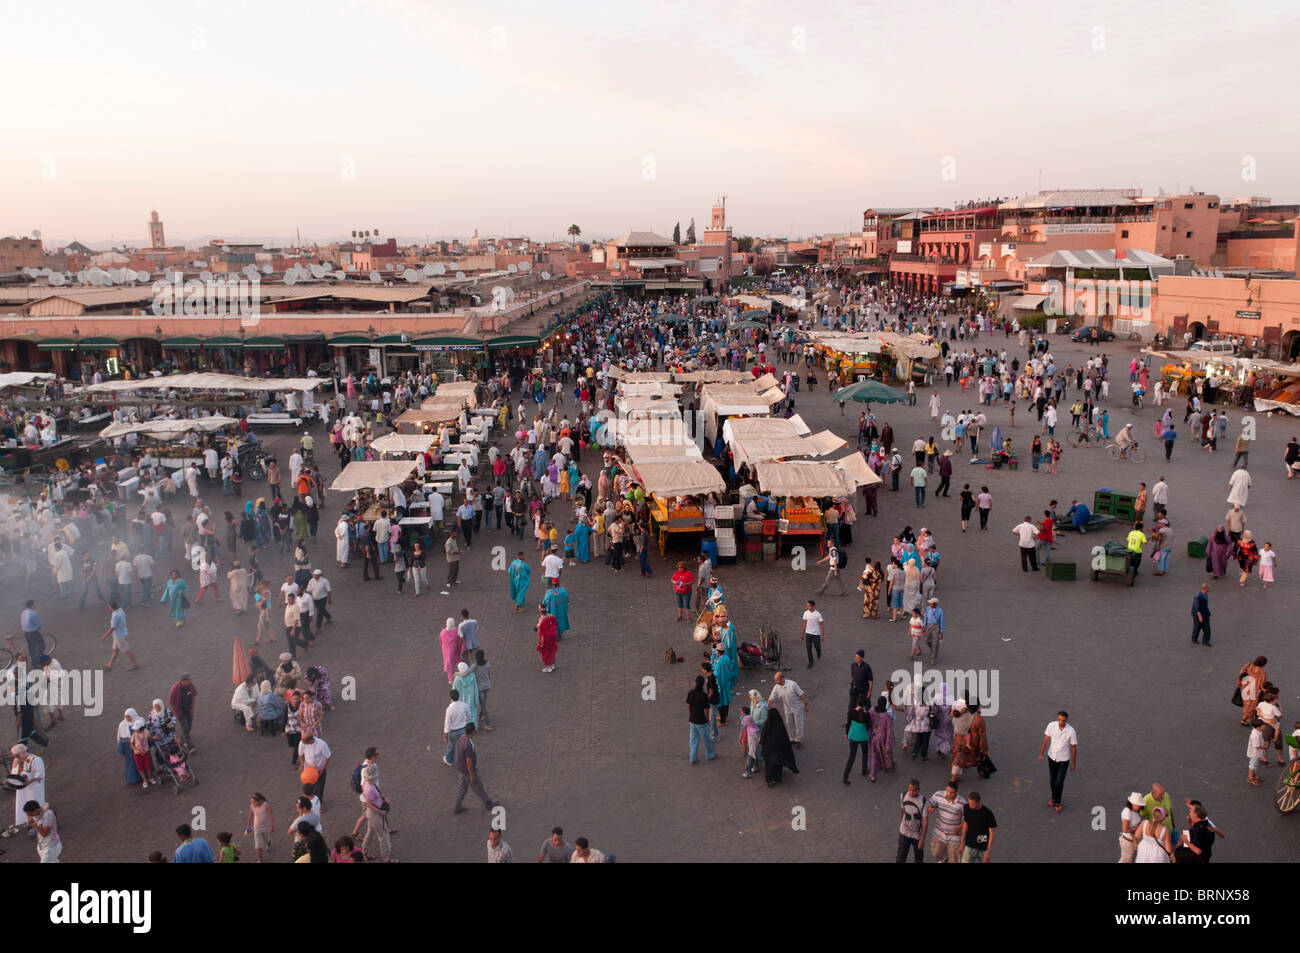 Jema al Fna Platz, Marrakesch, Marokko. Stockfoto